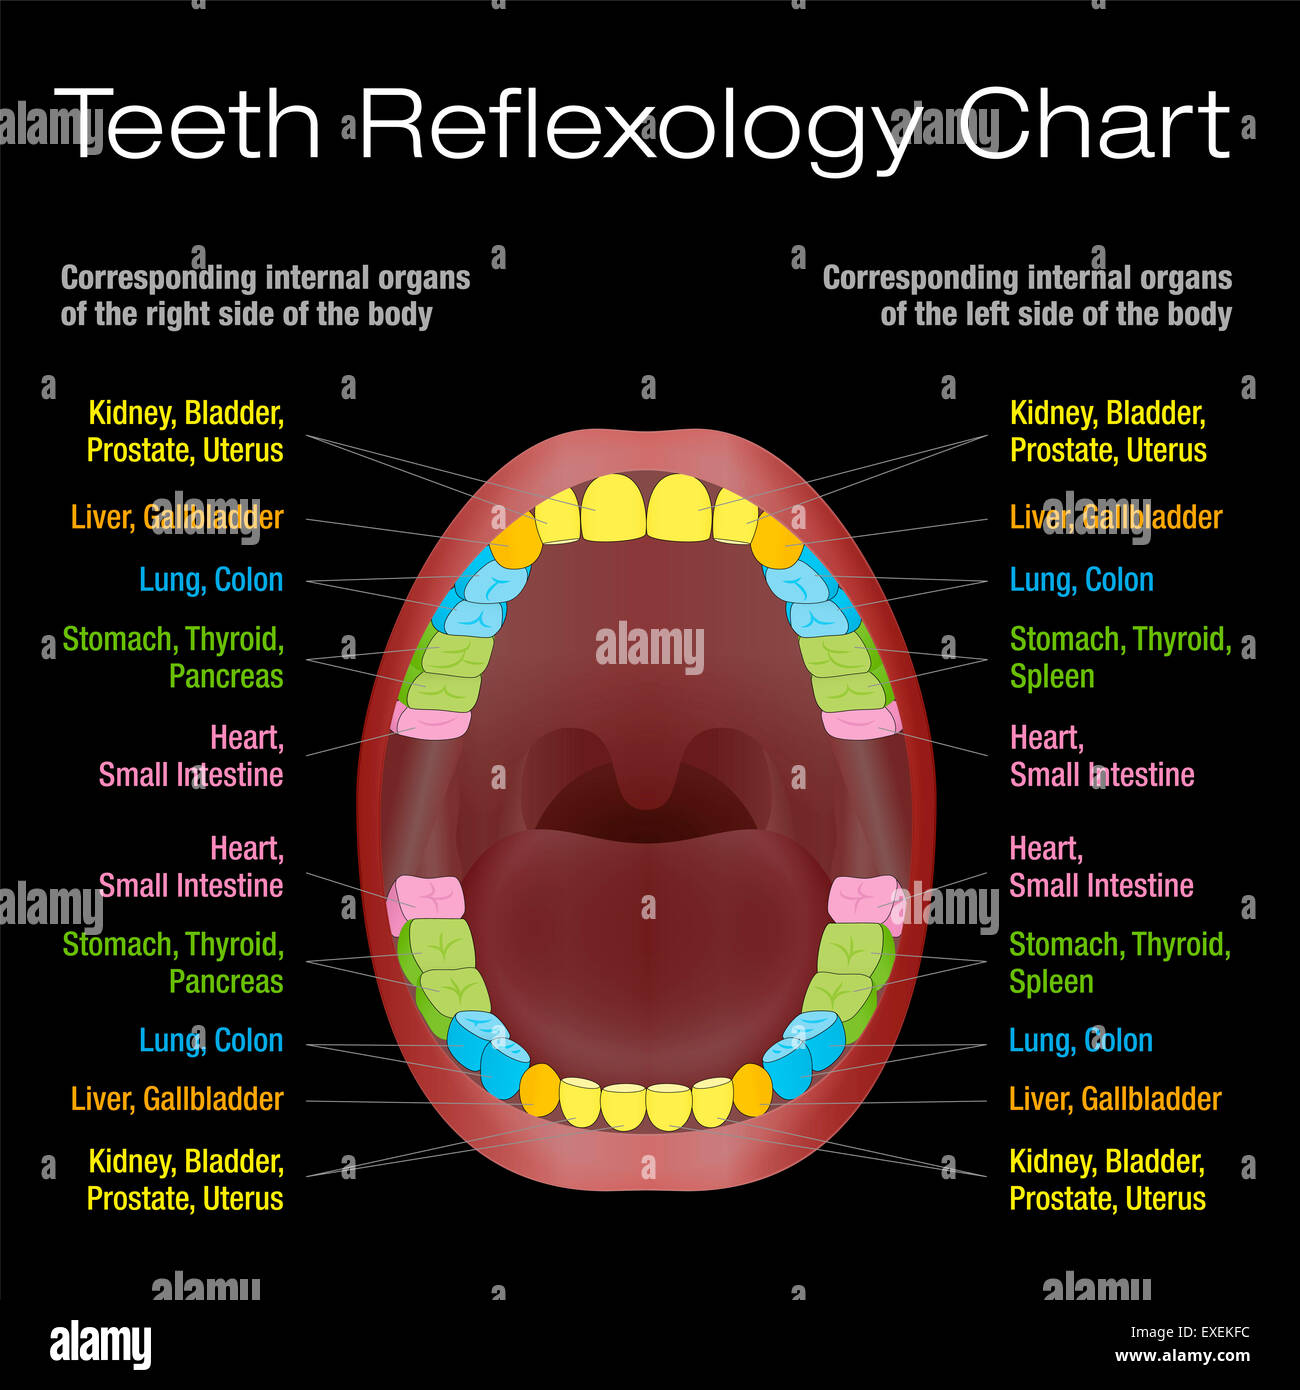 Dientes reflexología chart - alternativas de cuidado de la salud dental de los dientes permanentes y sus correspondientes órganos internos. Foto de stock